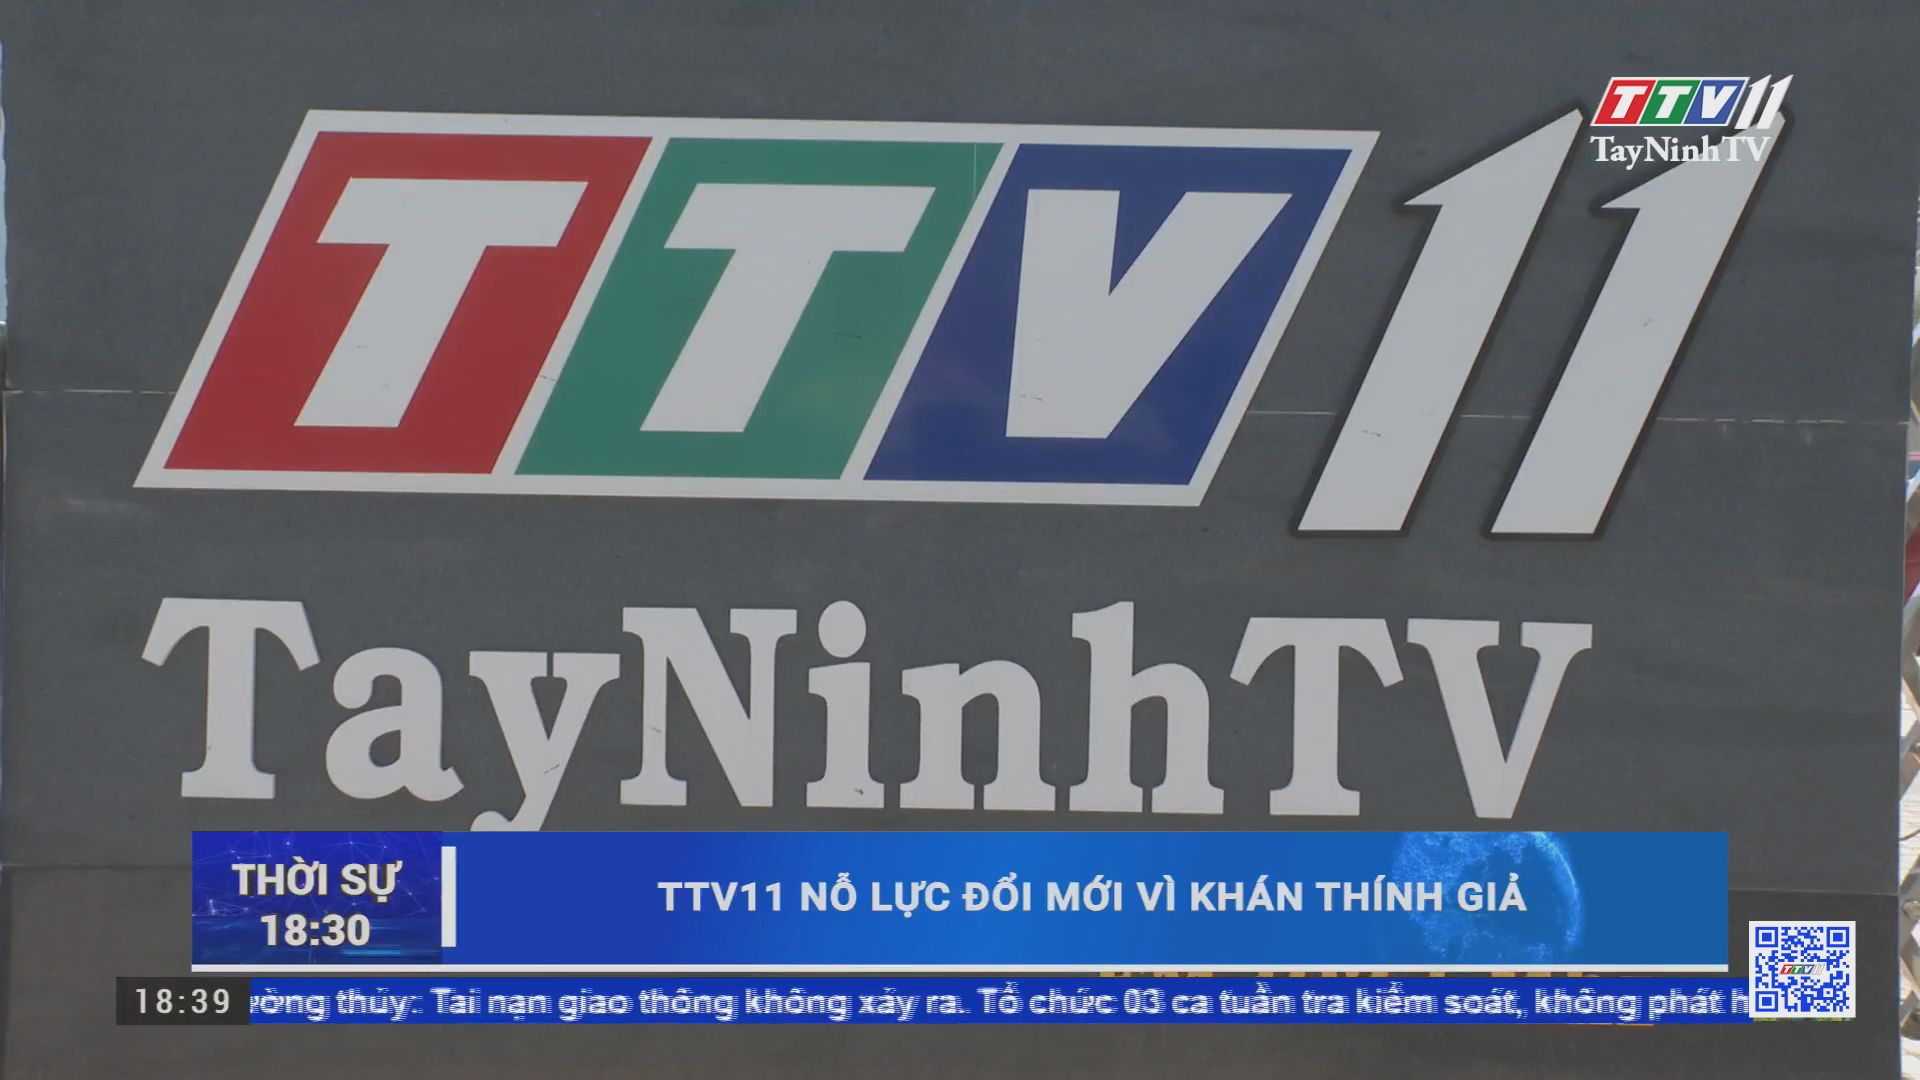 TTV11 nỗ lực đổi mới vì khán thính giả | TTV11 KẾT NỐI | TayNinhTV